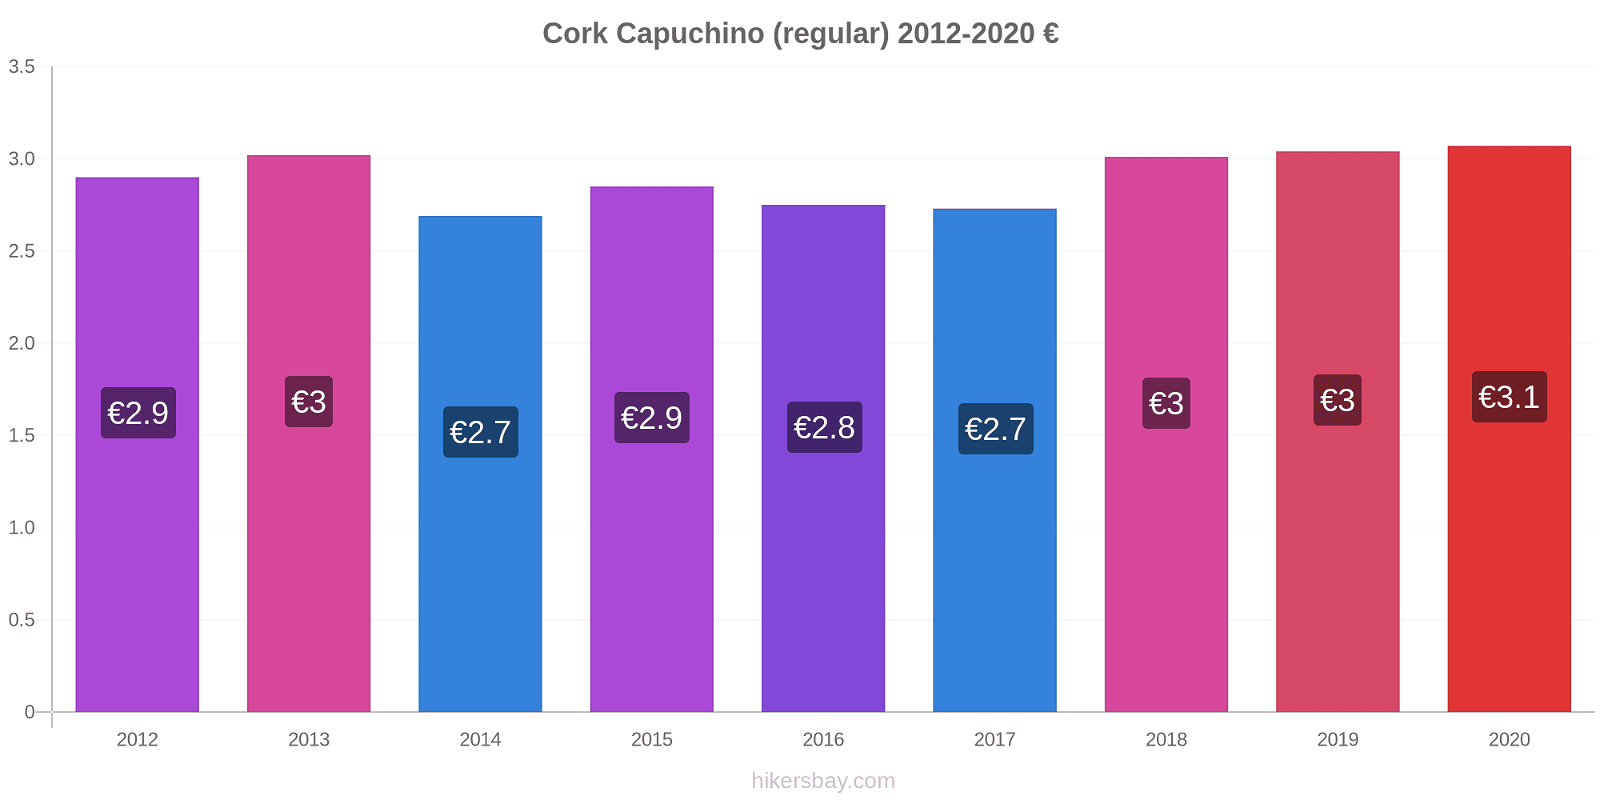 Cork cambios de precios Capuchino (regular) hikersbay.com